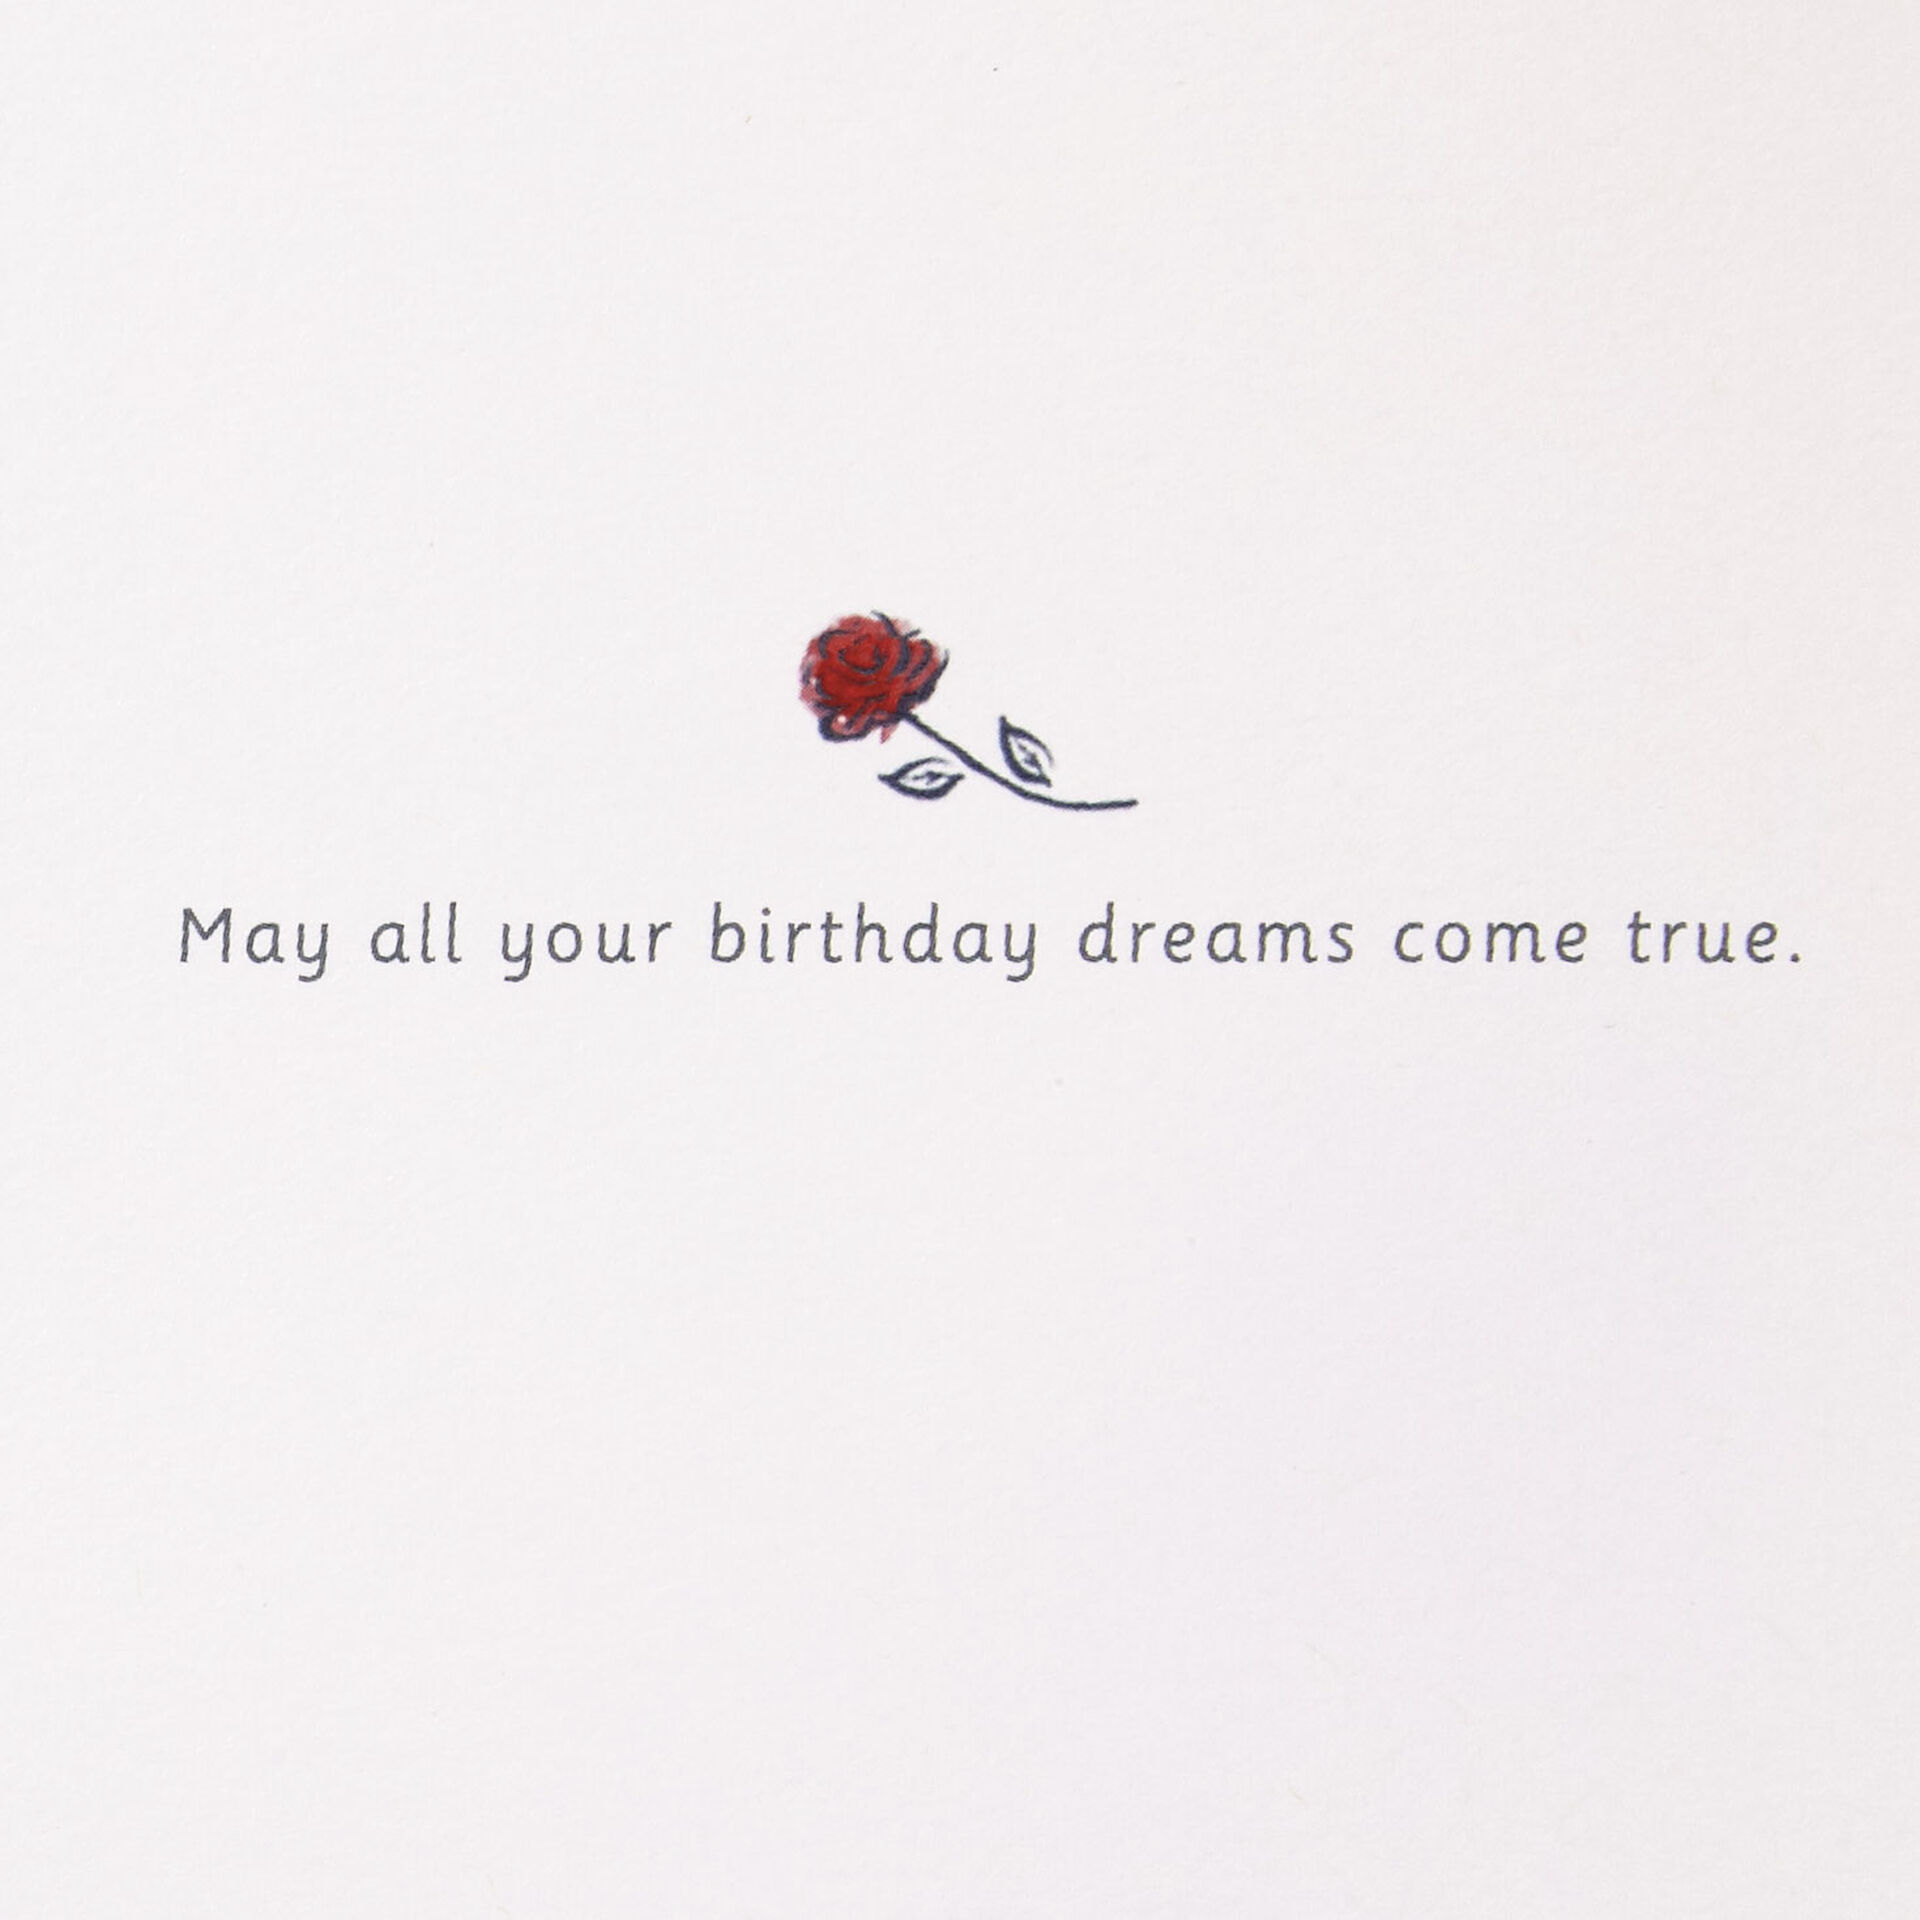 Disney-Princess-Belle-Dreams-Come-True-Birthday-Card_899LAD9342_02